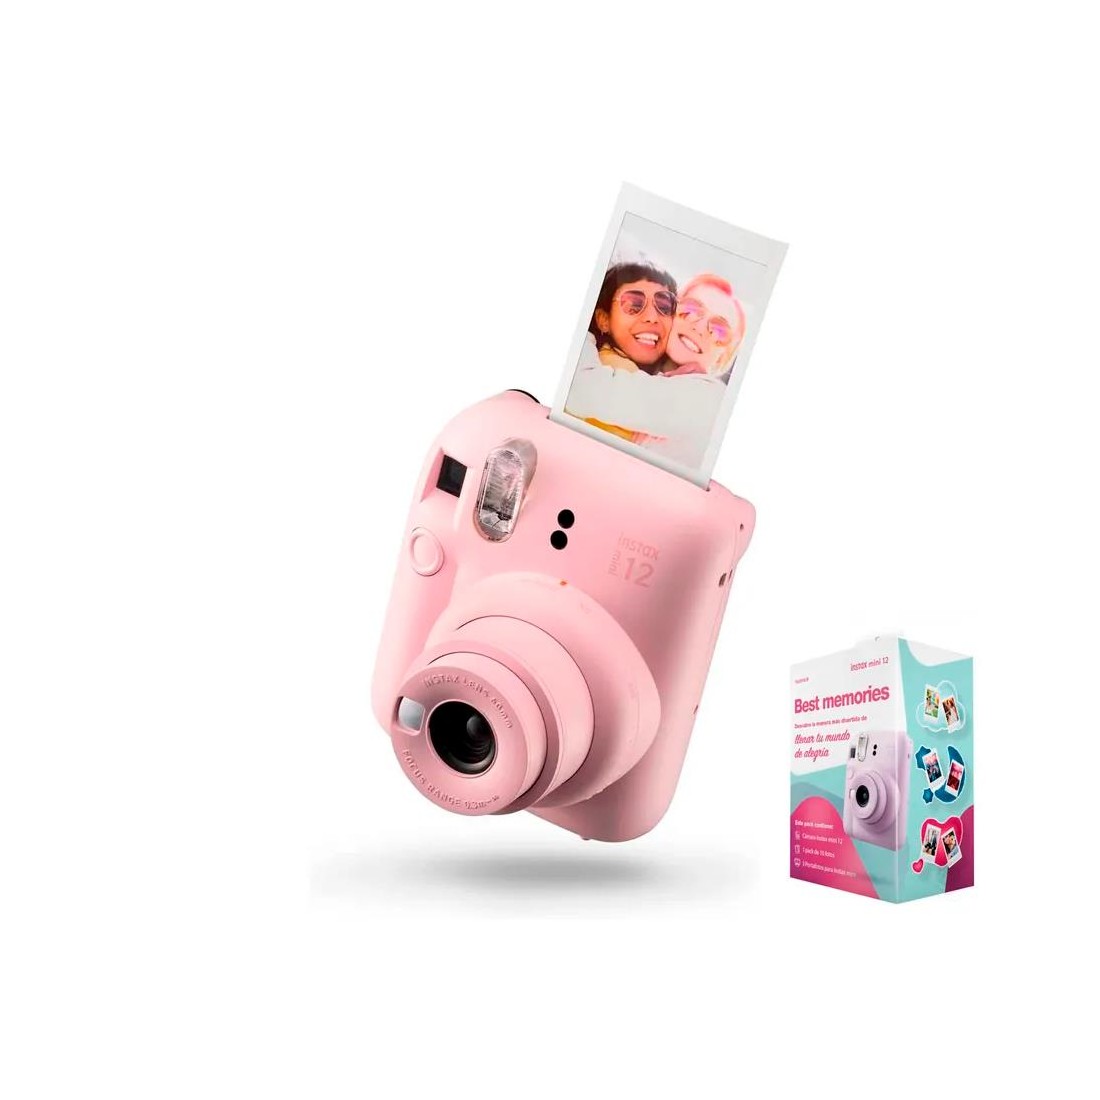  Pack de film fotográfico Polaroid Originals, instantáneo,  impresiones a color, para Polaroid 600, blanco : Electrónica